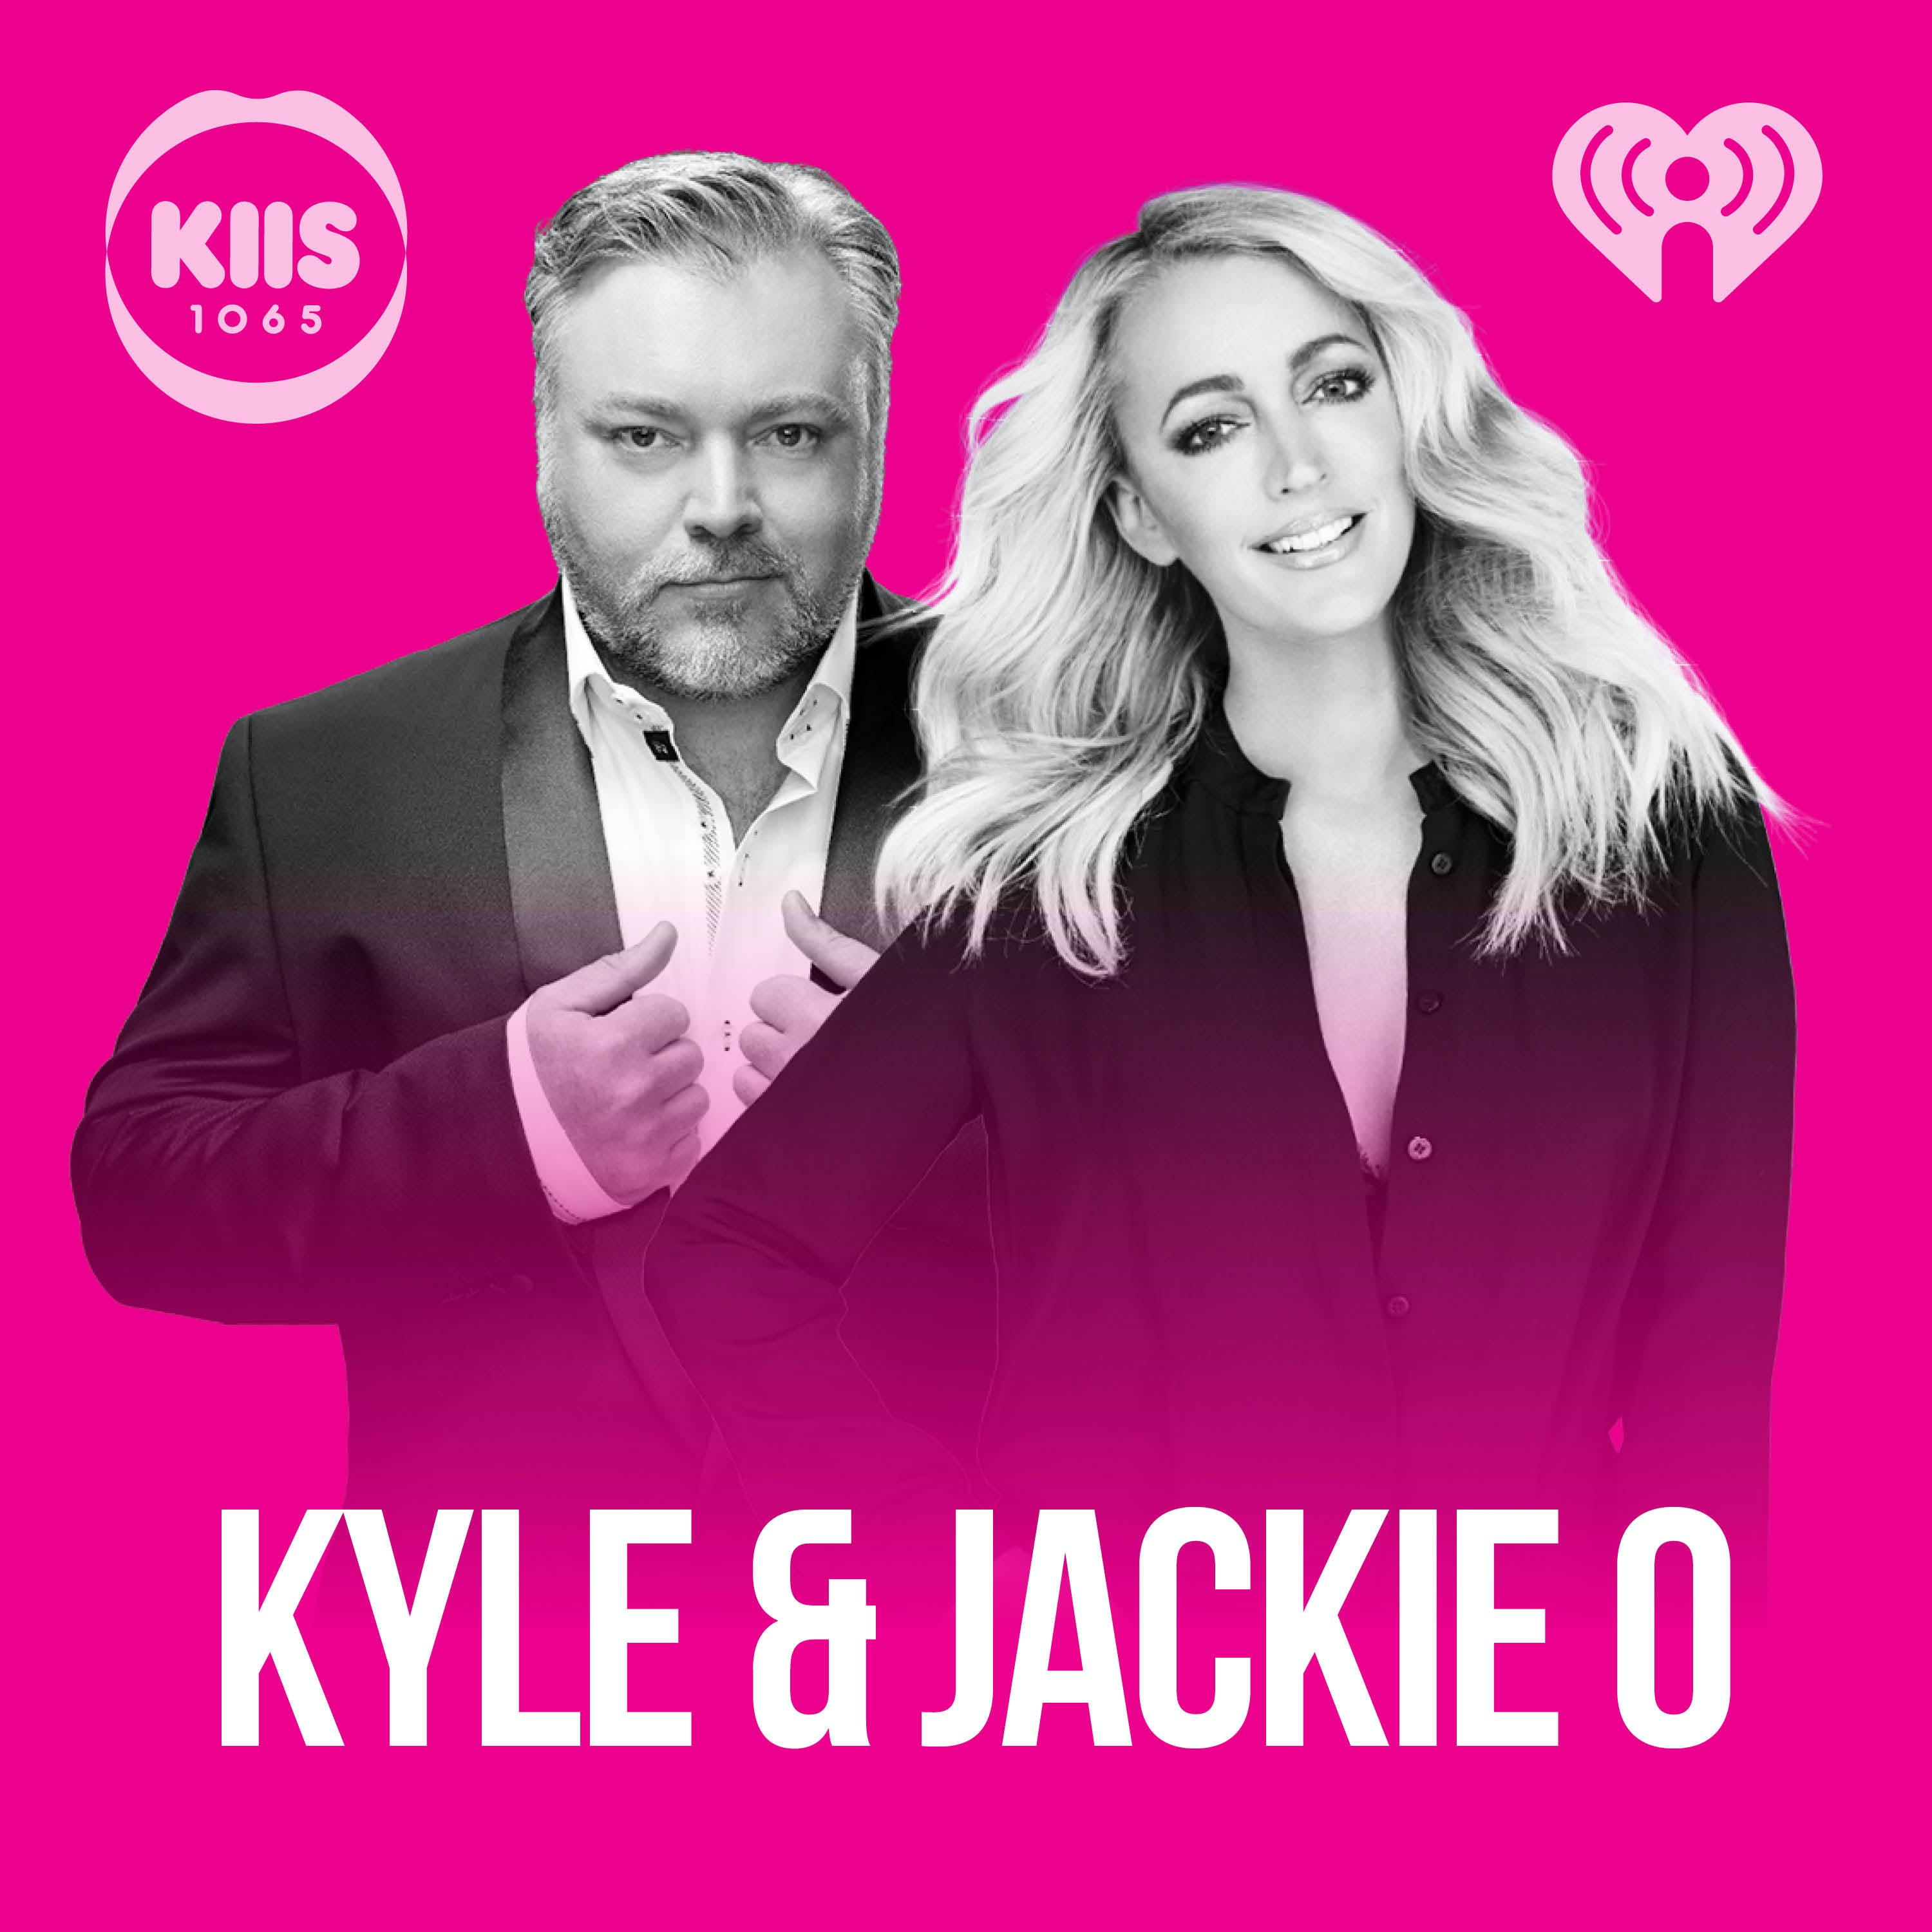 21/02/19 - The Kyle & Jackie O Show #1018